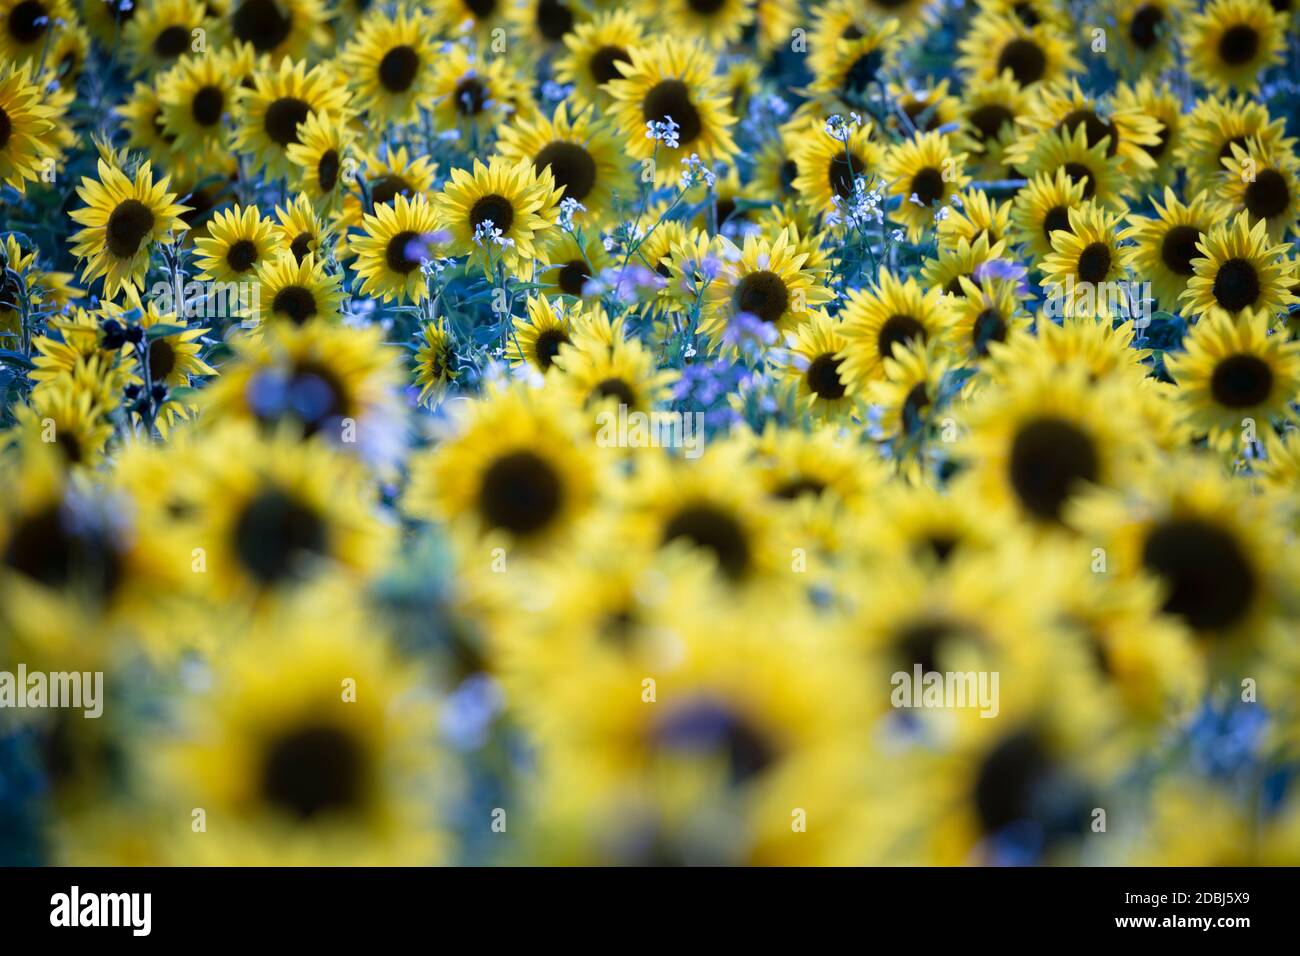 Field full of yellow sunflowers, Newbury, West Berkshire, England, United Kingdom, Europe Stock Photo